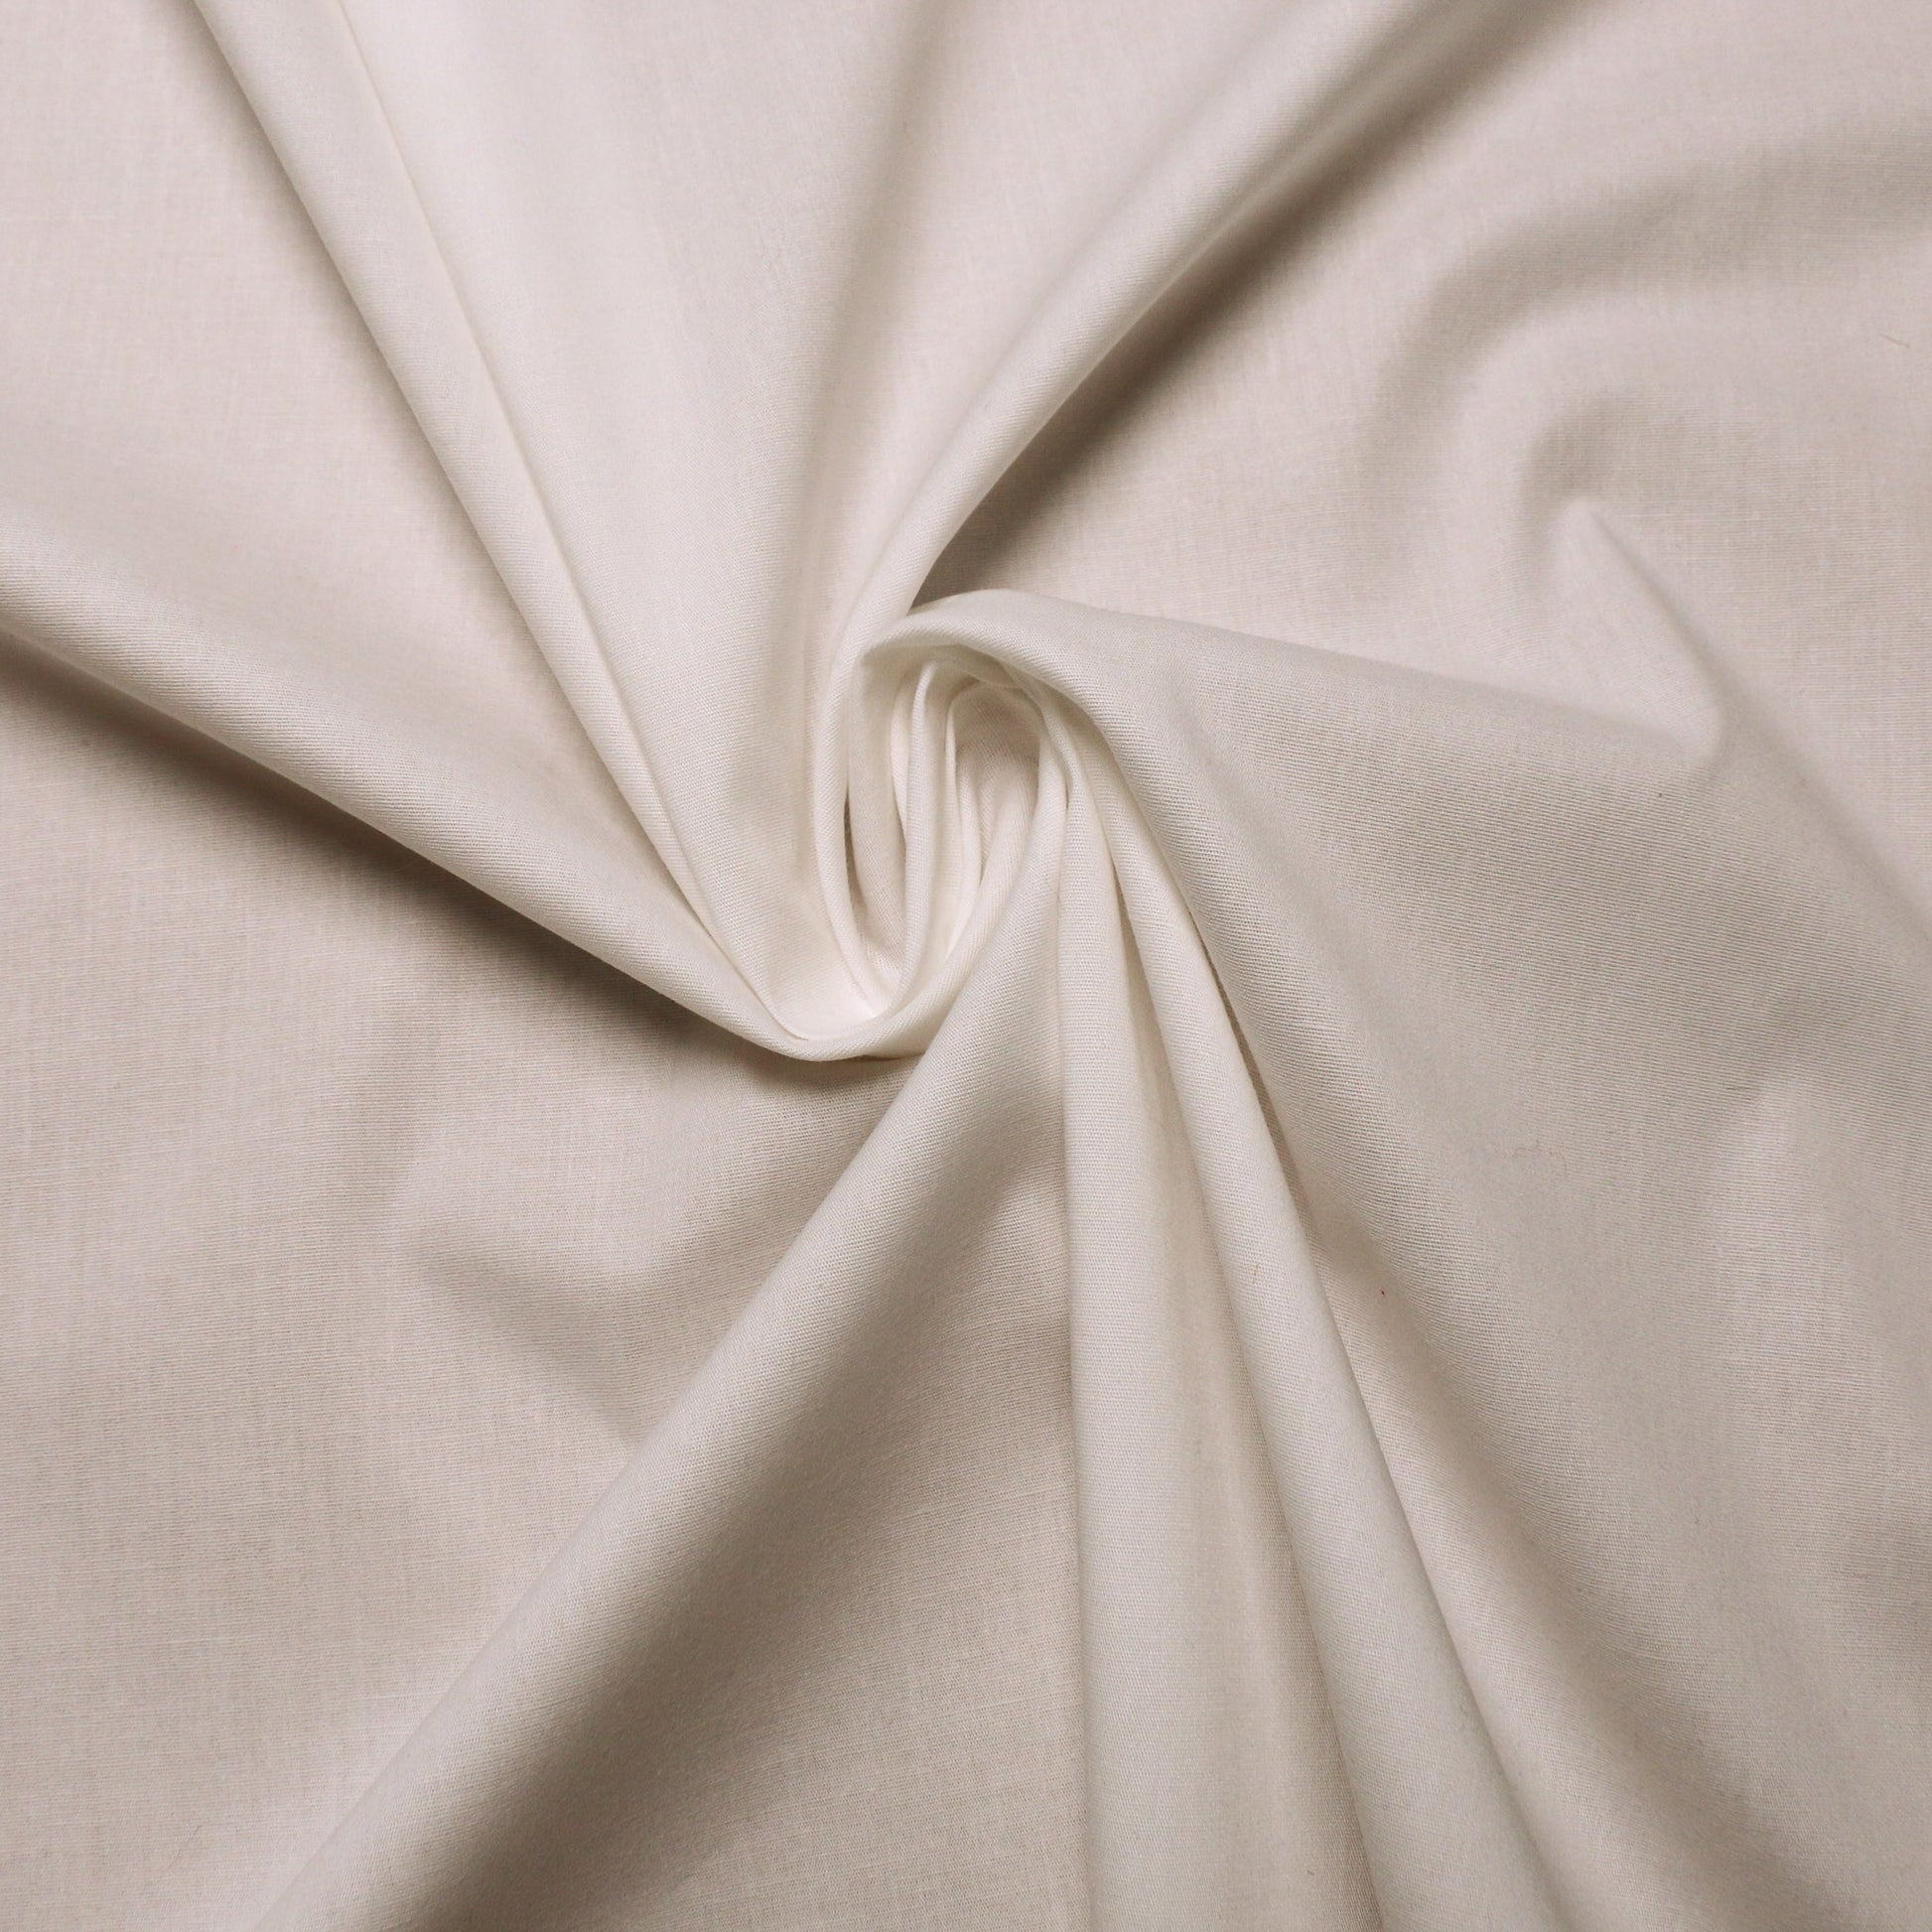 stretchy cream cotton dress fabric